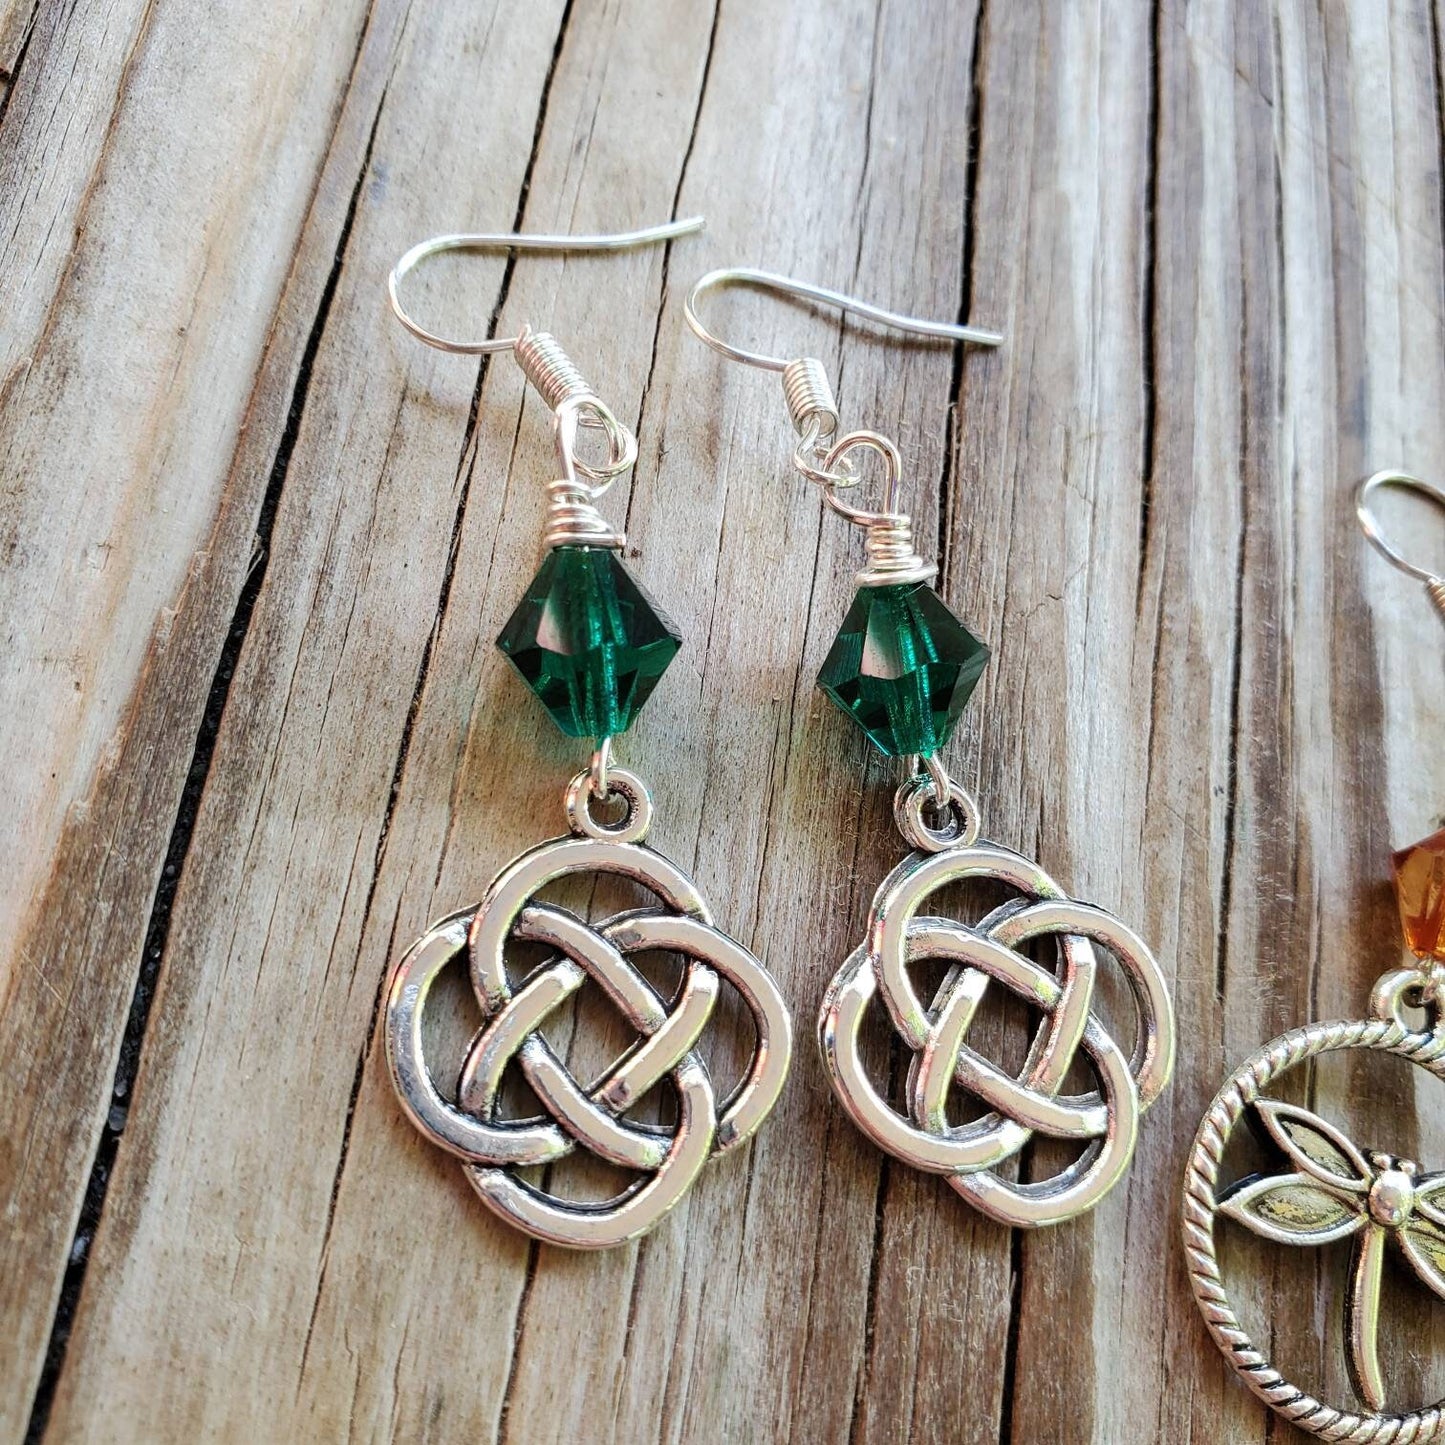 Celtic Earrings